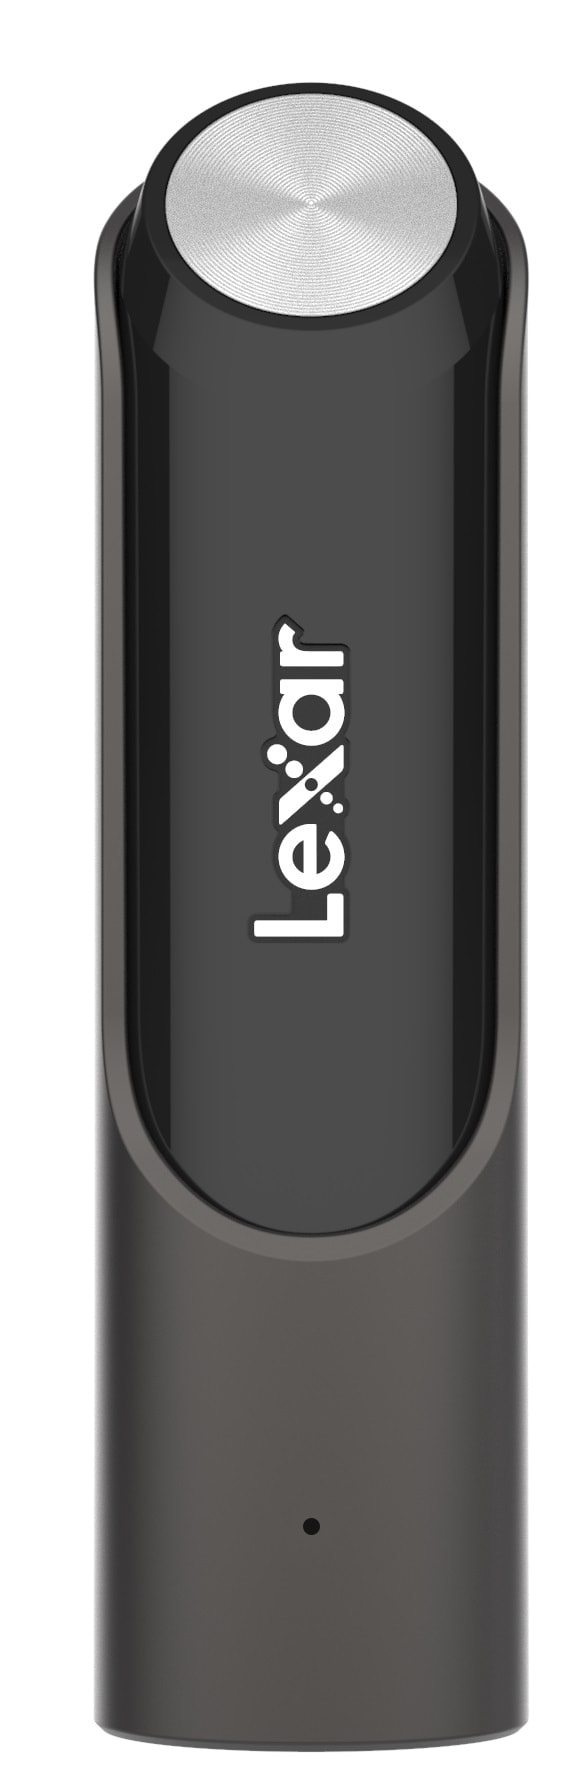 Lexar ra mắt USB tốc độ siêu cao, chuẩn 3.2 Gen 1 cho anh em tha hồ lưu trữ tài liệu - Ảnh 3.